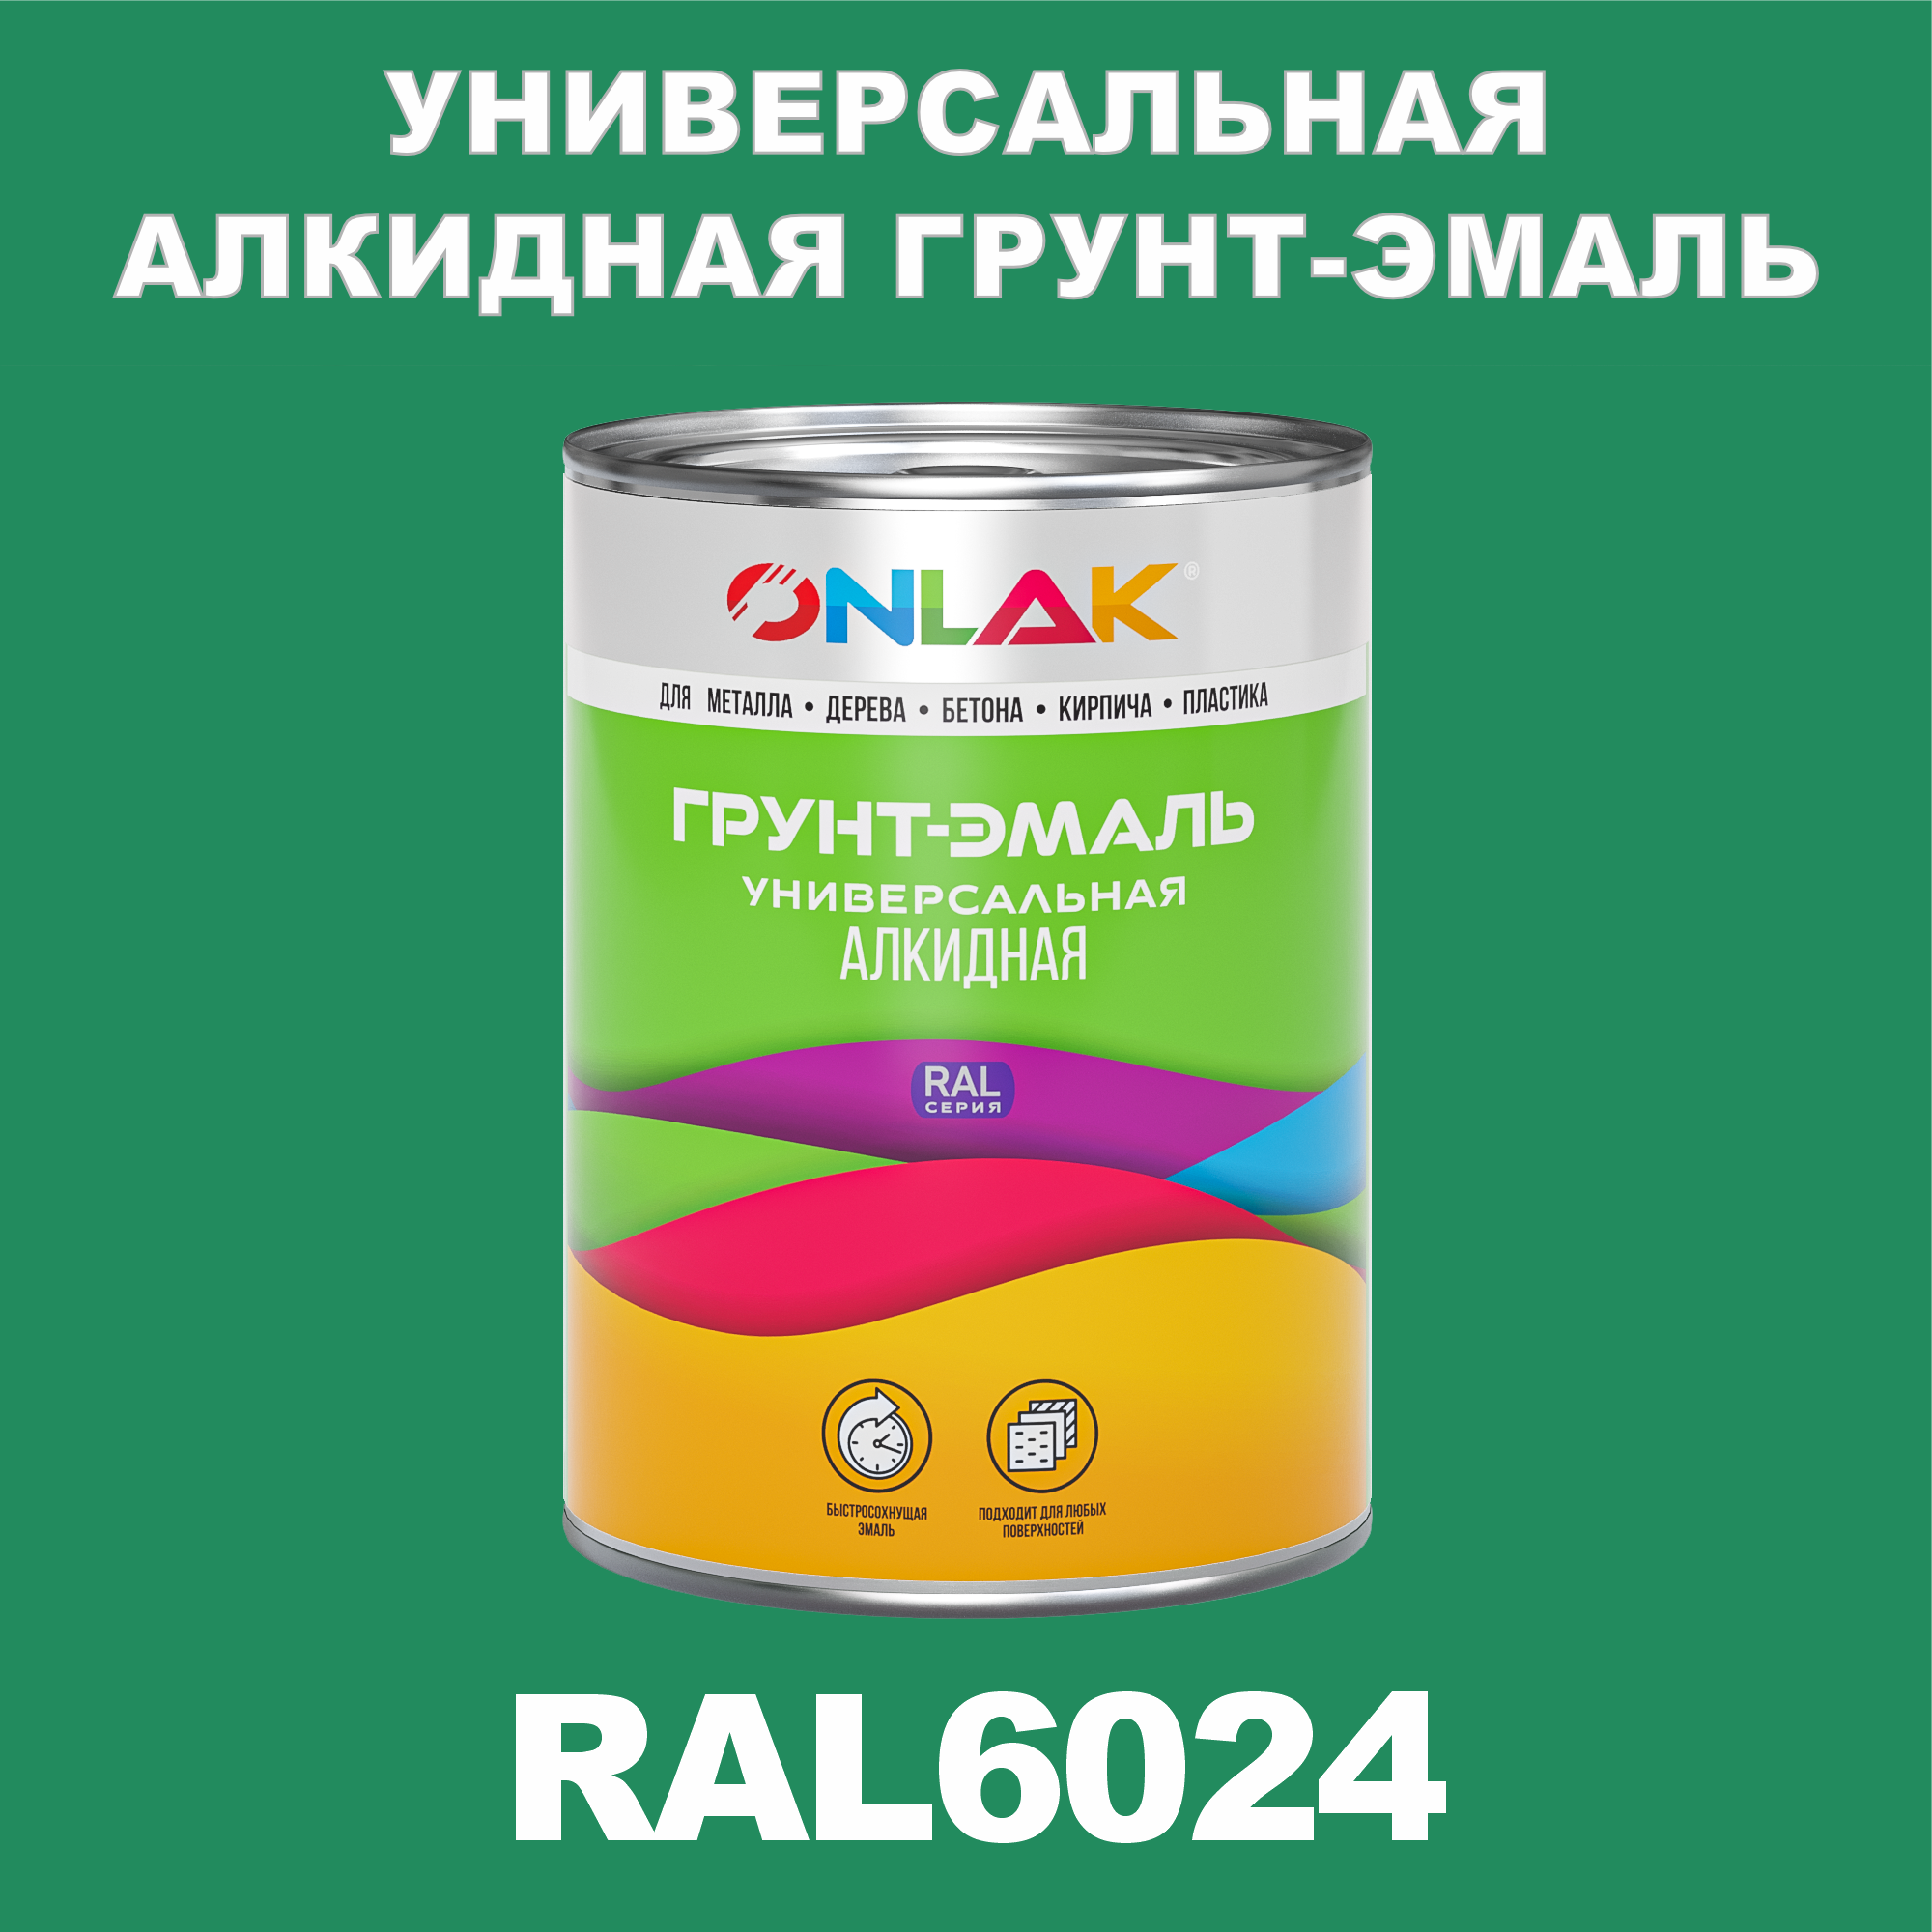 Грунт-эмаль ONLAK 1К RAL6024 антикоррозионная алкидная по металлу по ржавчине 1 кг грунт эмаль аэрозольная престиж 3в1 алкидная коричневая ral 8017 425 мл 0 425 кг